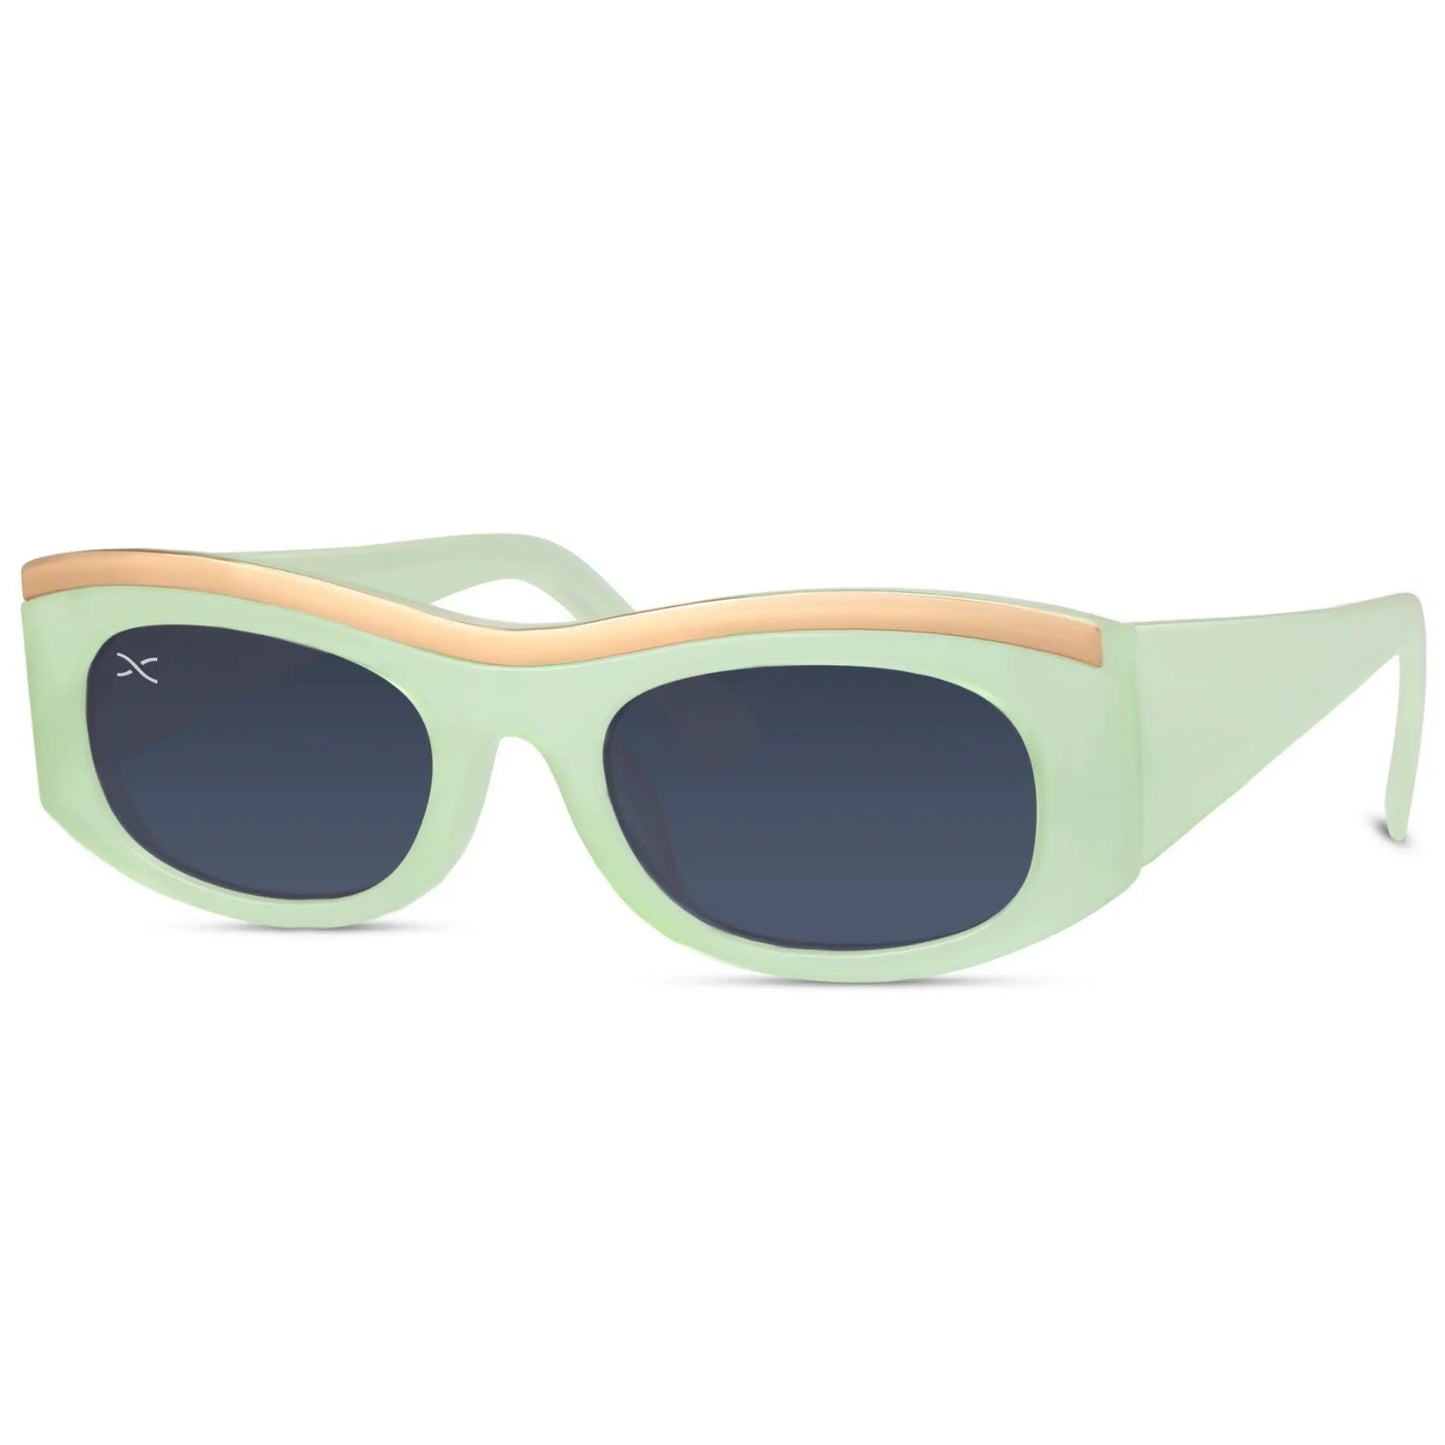 Ορθογώνια Γυαλιά Ηλίου Lisboa της Exposure Sunglasses με προστασία UV400 σε πράσινο χρώμα σκελετού και μαύρο φακό.